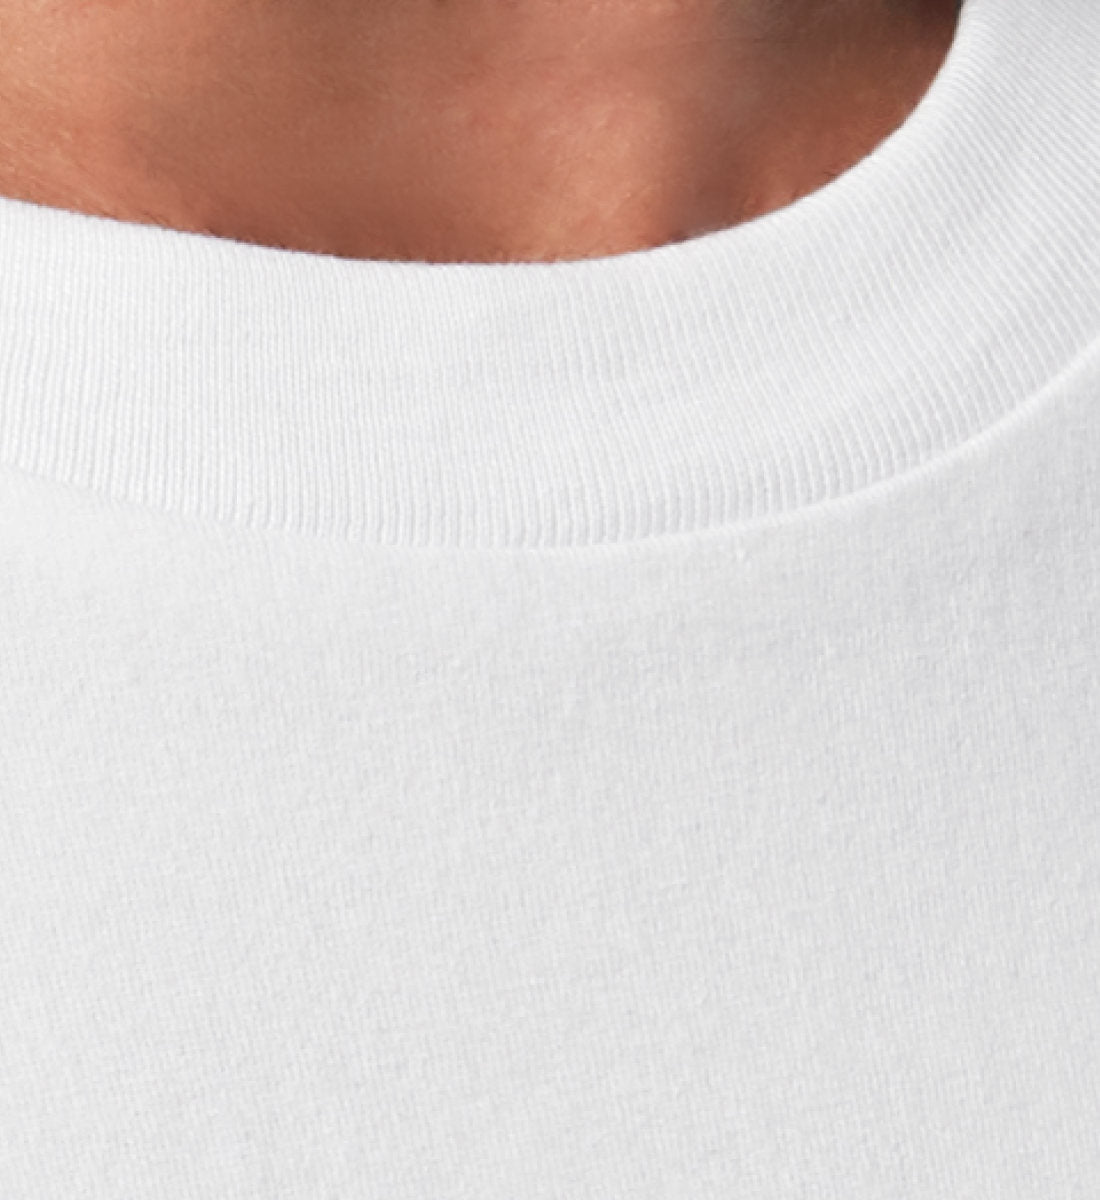 Weißes T-Shirt Unisex für Damen und Herren Relaxed Fit bedruckt in weiß mit Design der Kollektion Rocknroll Weekend und dem Logo Schriftzug von Roger Rockawoo Clothing